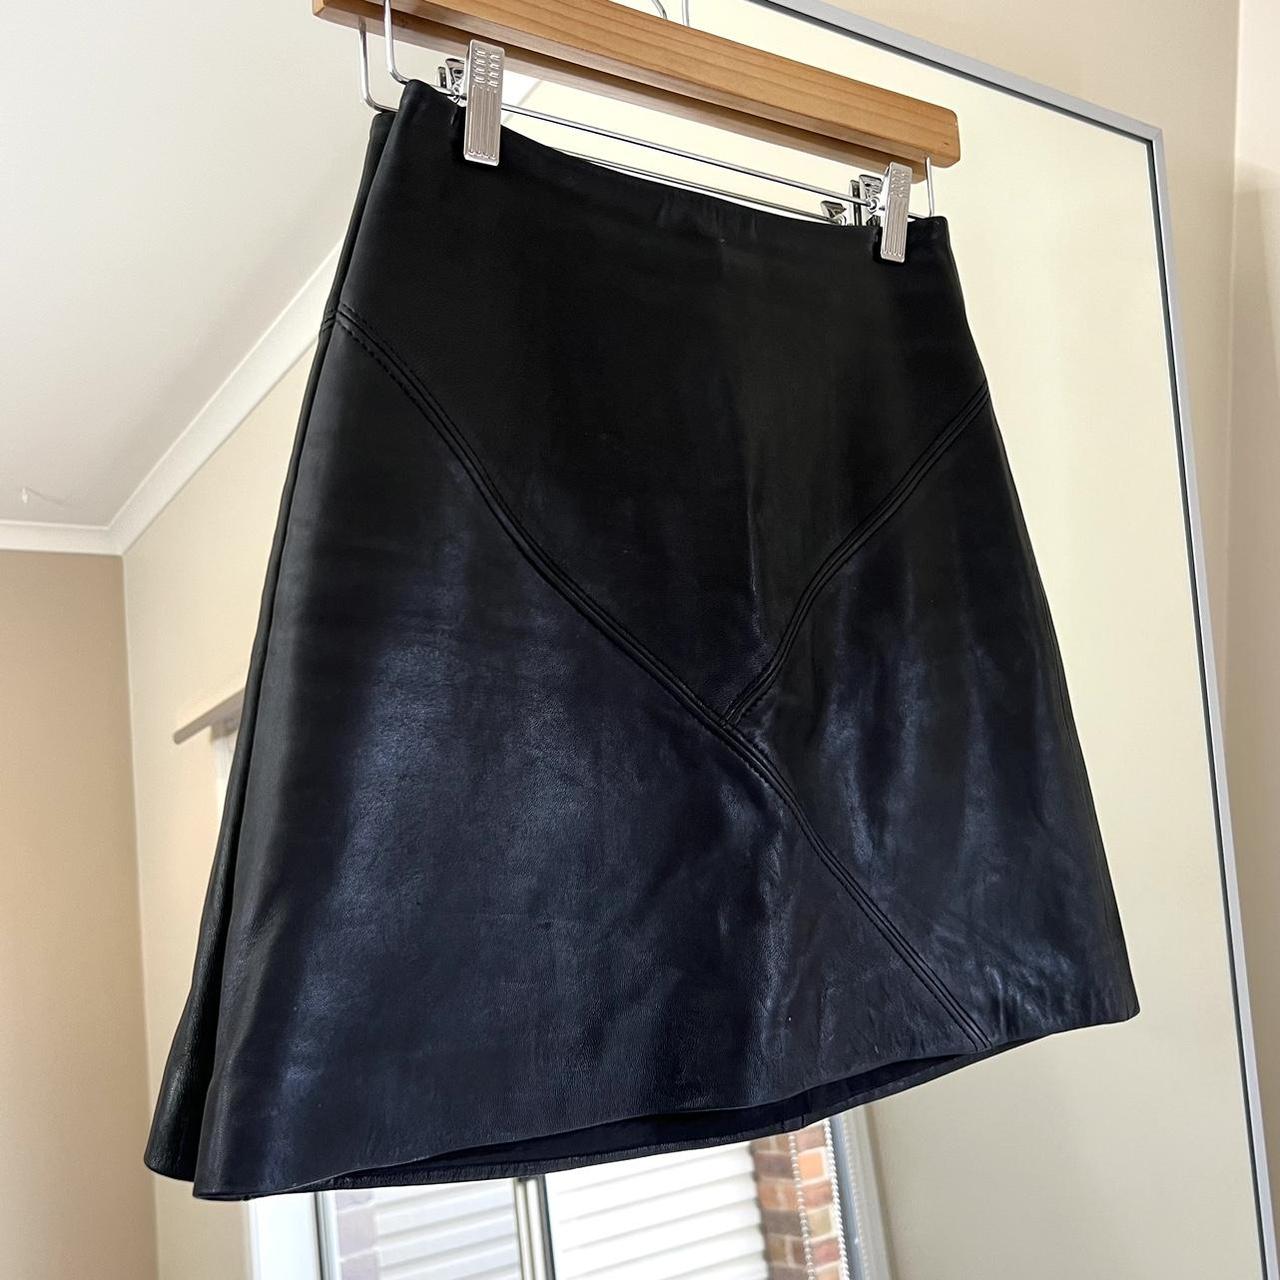 Kookai Soft Leather Mini Skirt Size 34 / Aus 6 Used... - Depop